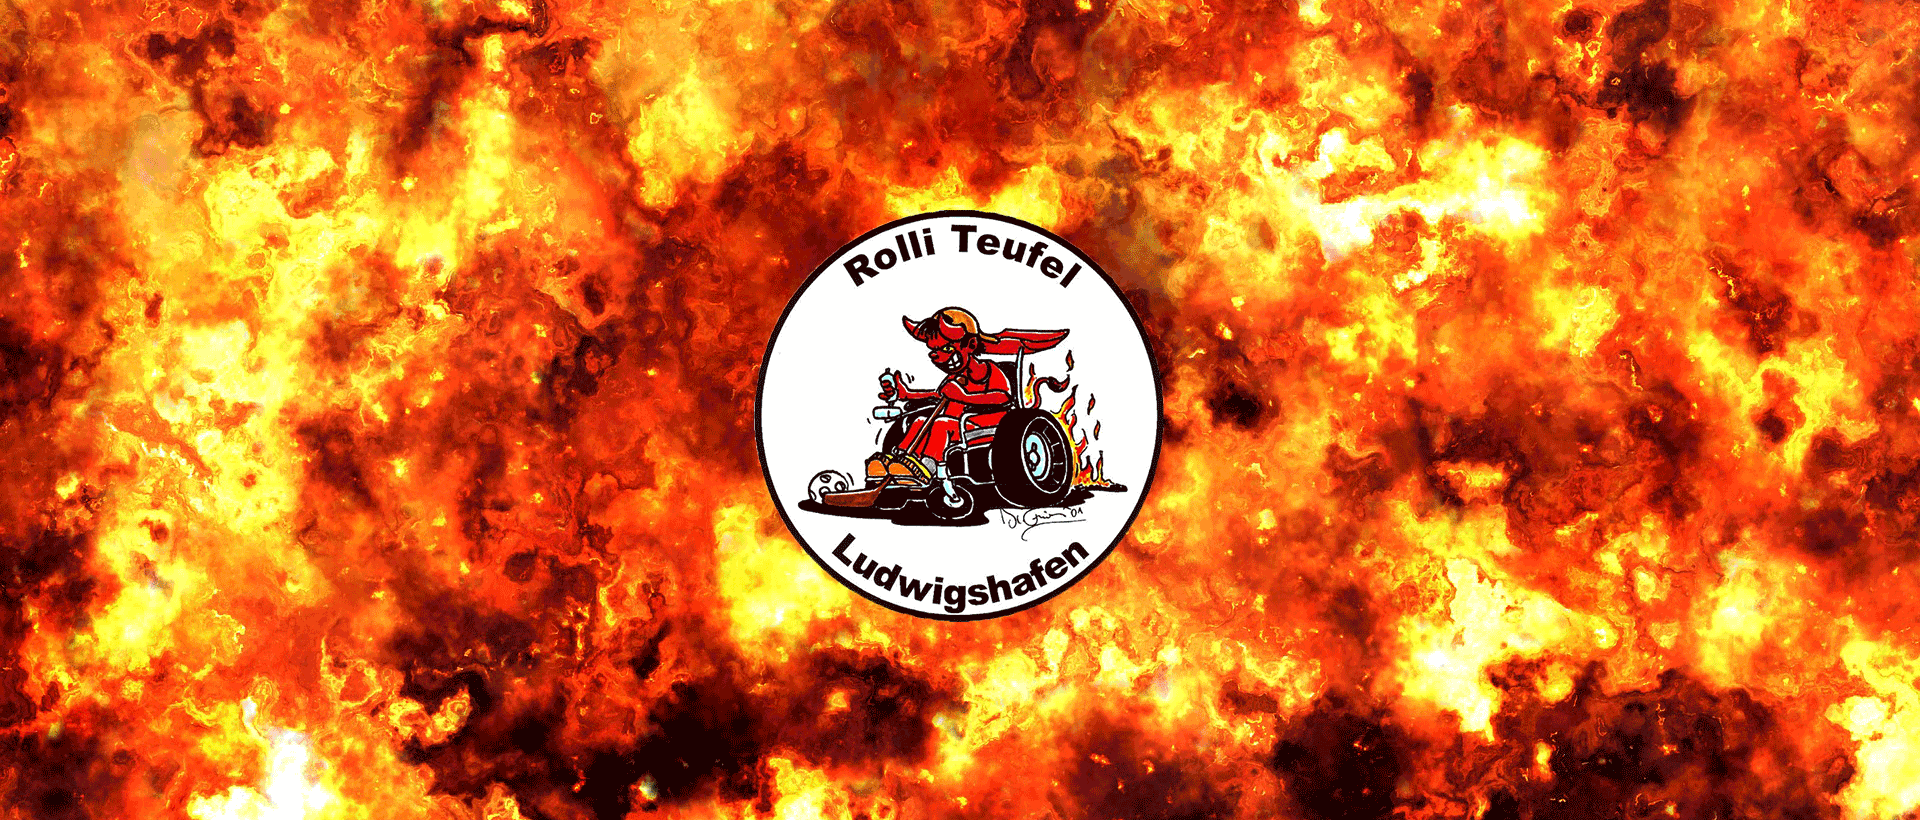 Rolli-Teufel Logo mit Feuerhintergrund